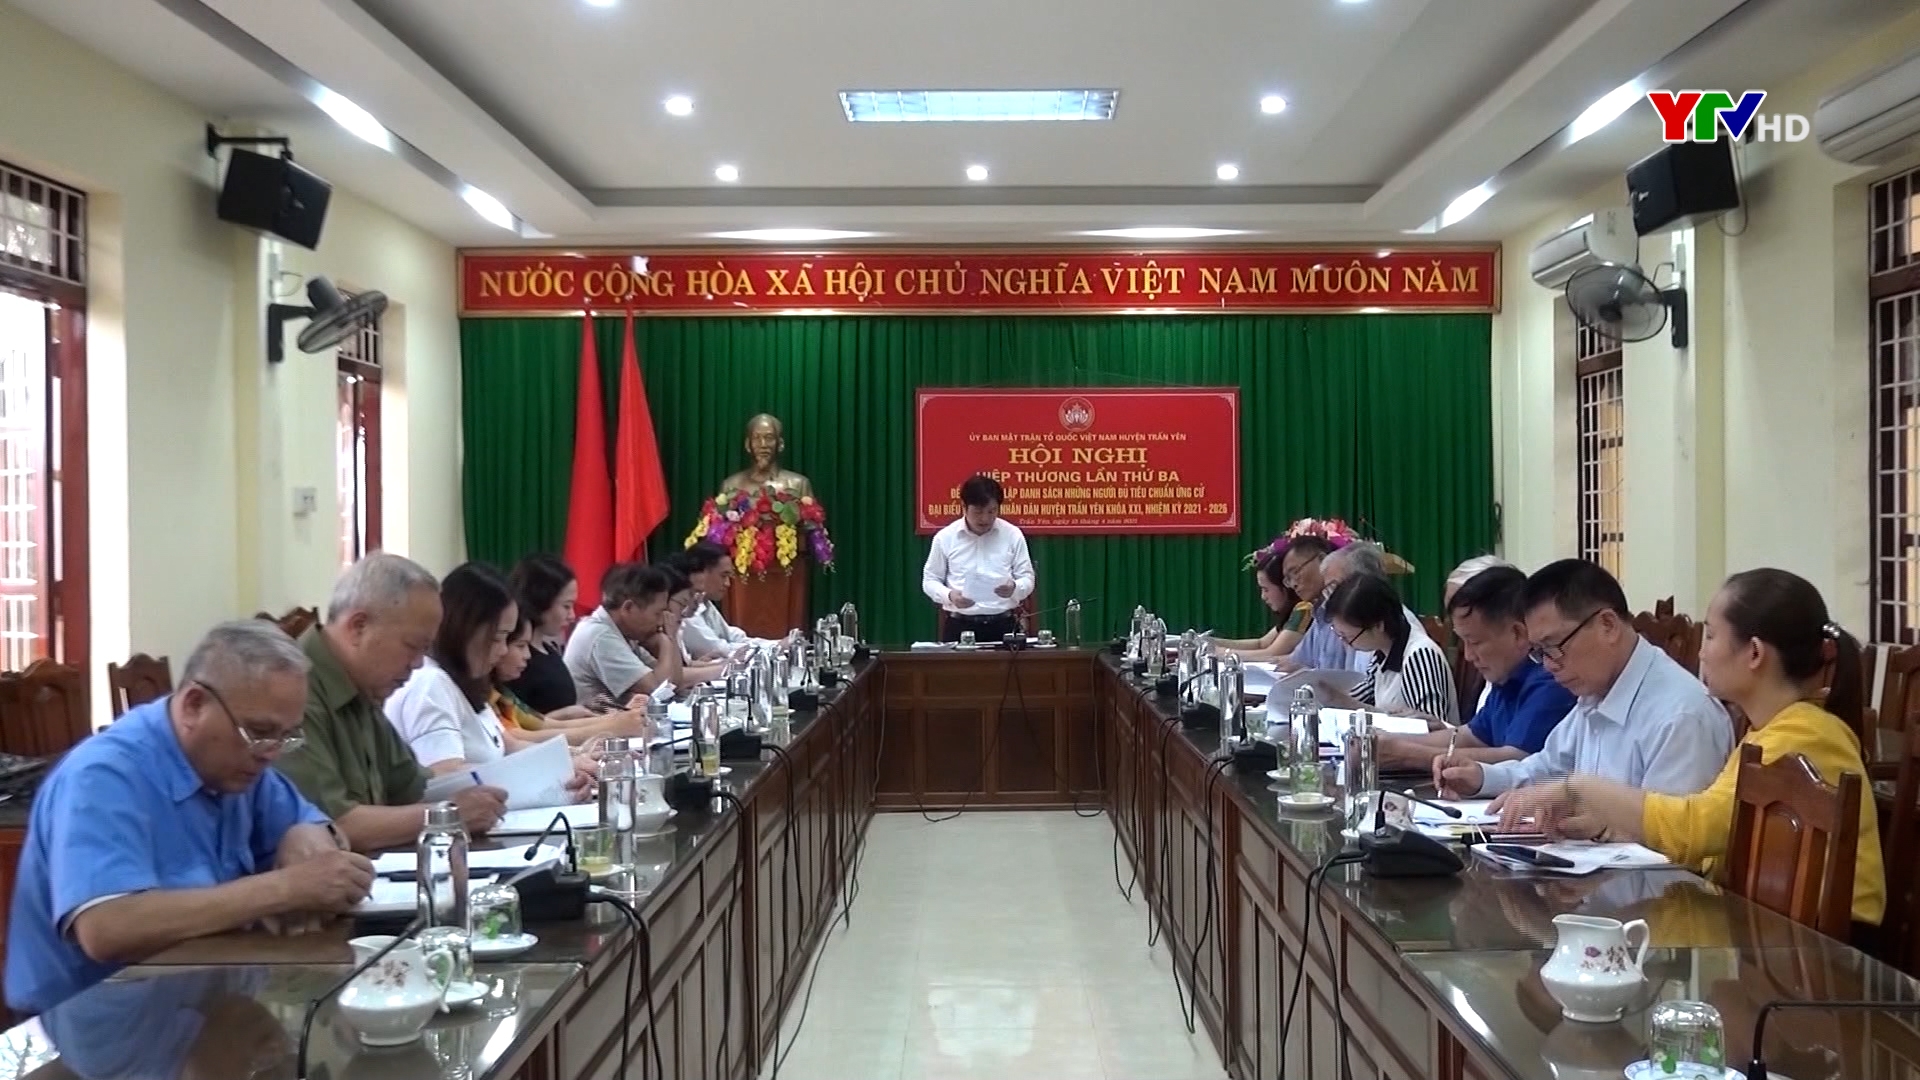 Ủy ban MTTQ huyện Trấn Yên và Trạm Tấu đã tổ chức Hội nghị hiệp thương lần thứ 3